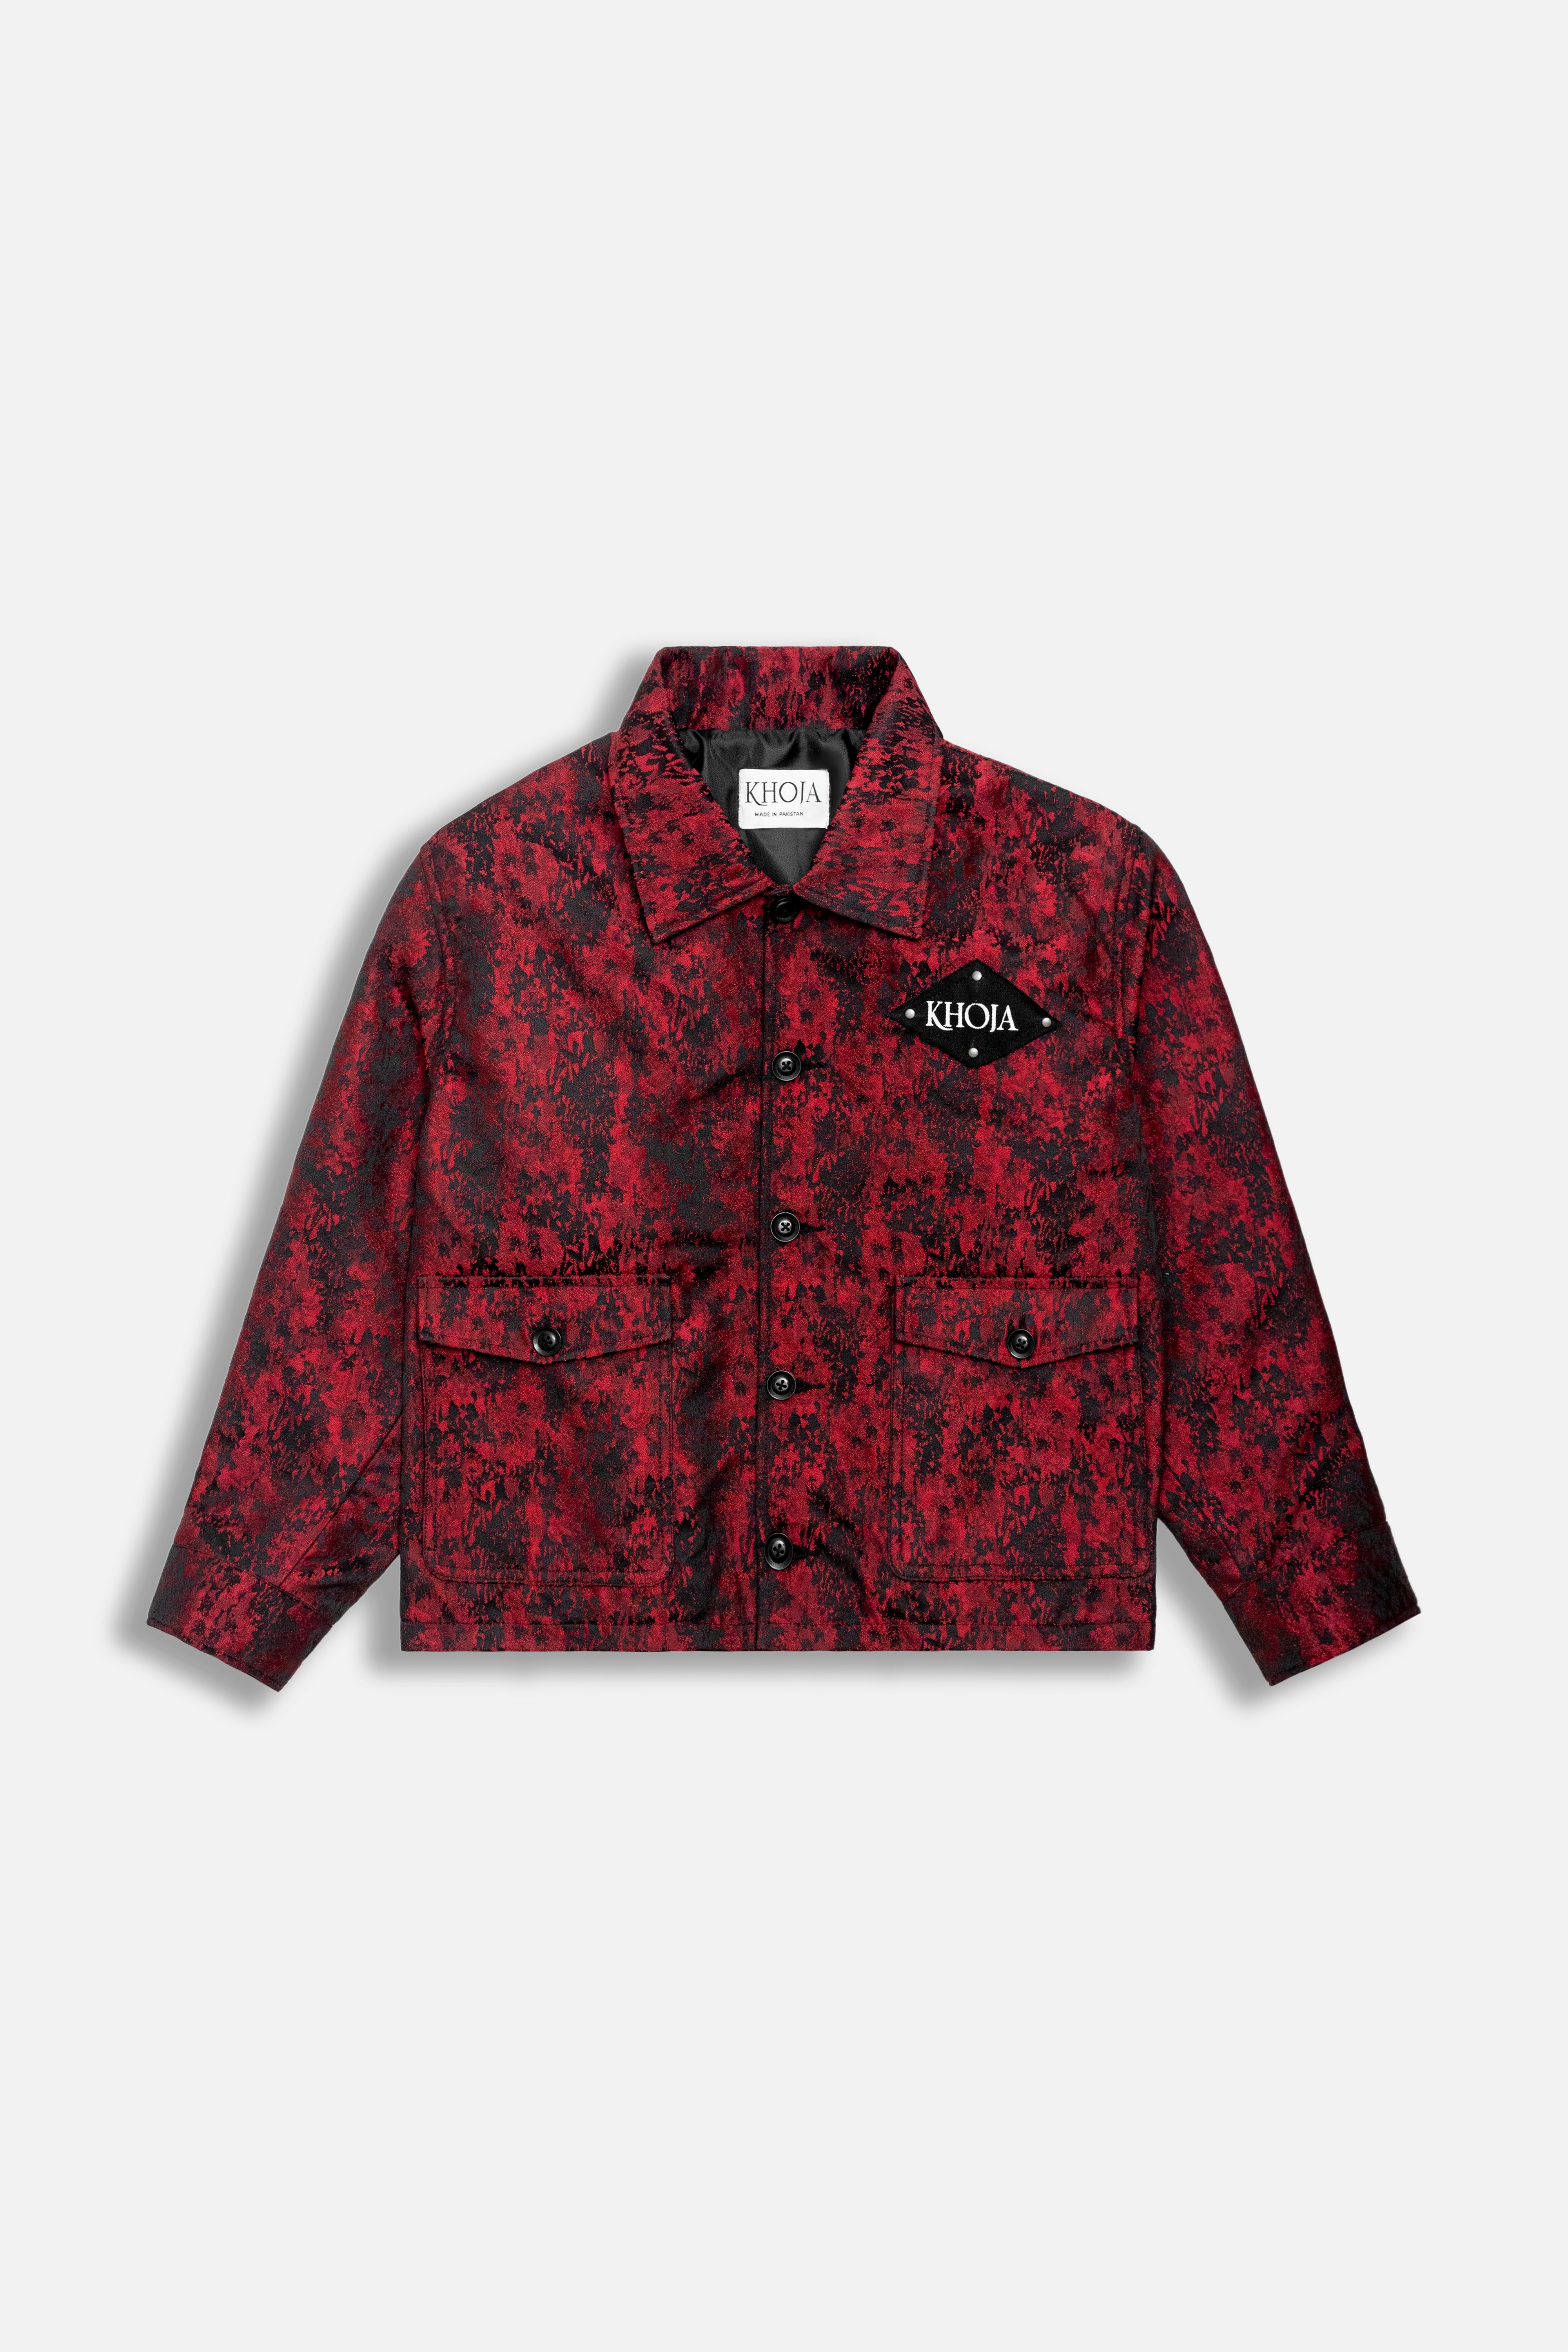 “Crimson Noir Weave” Cross Weaved Woven Cottan Jacket